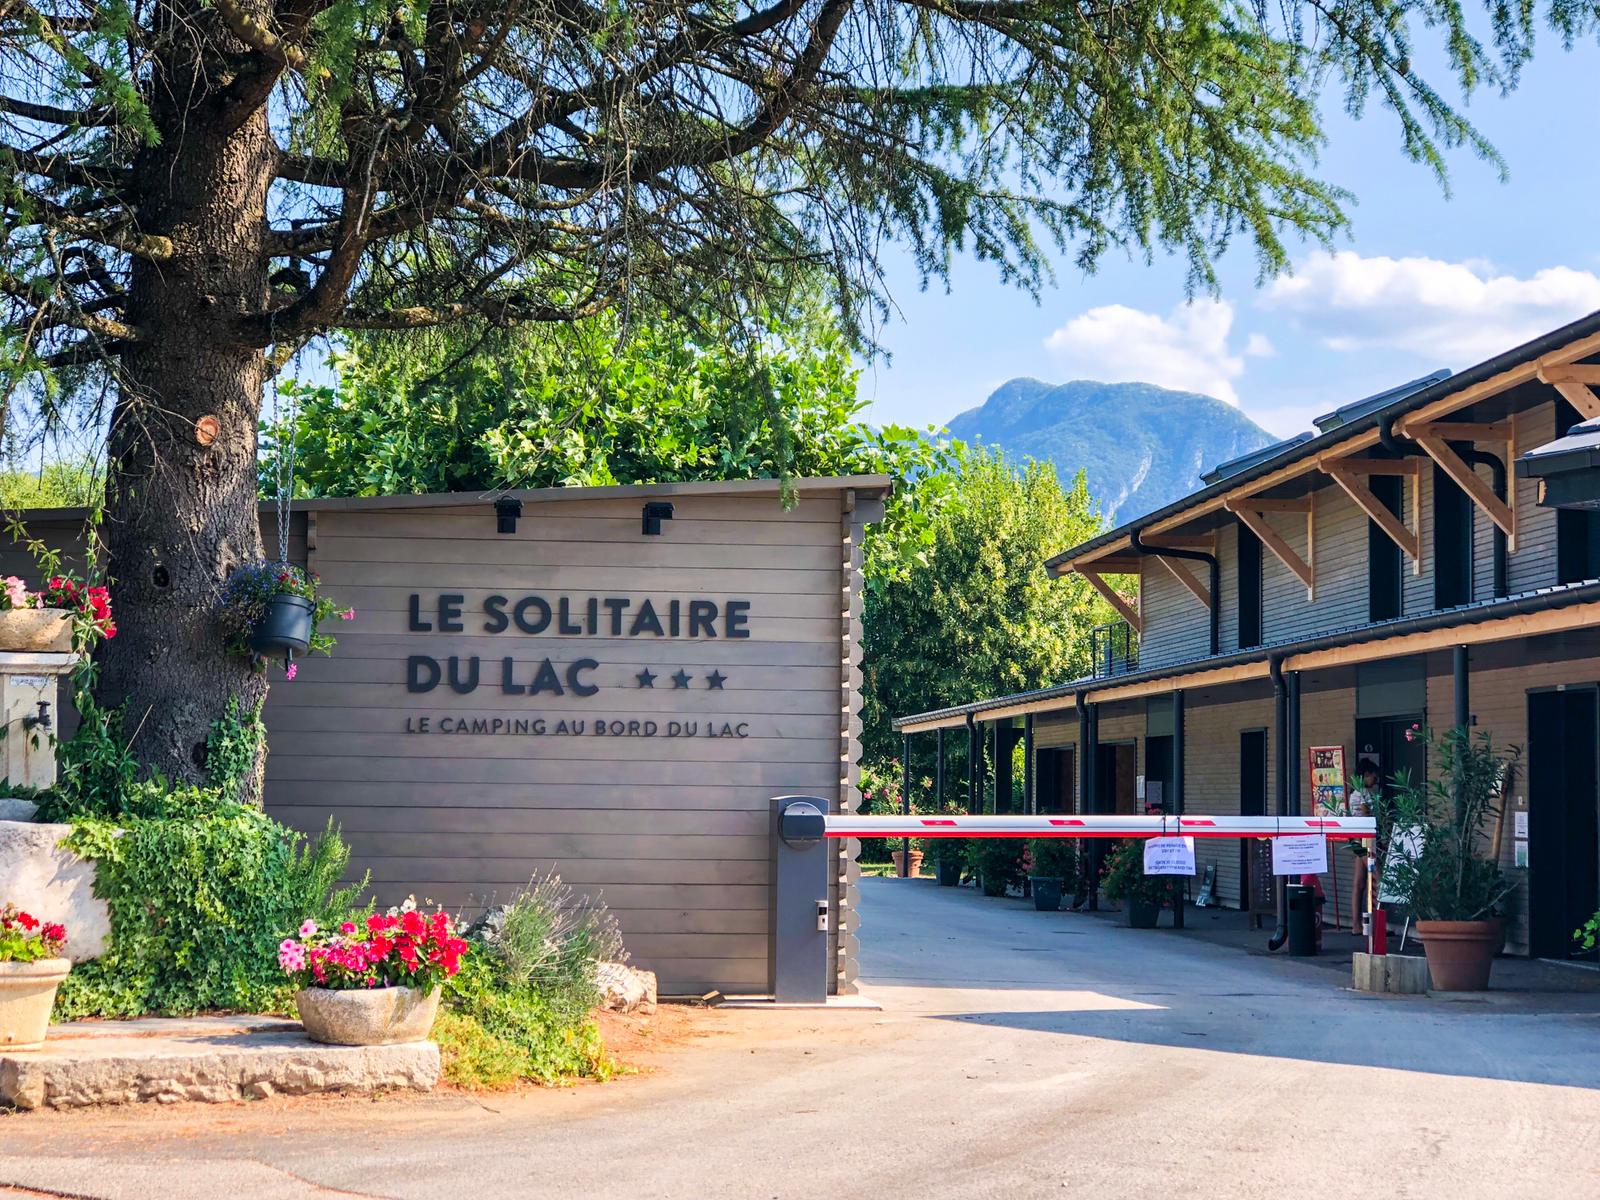 Bedrijf Le Solitaire Du Lac - Saint Jorioz